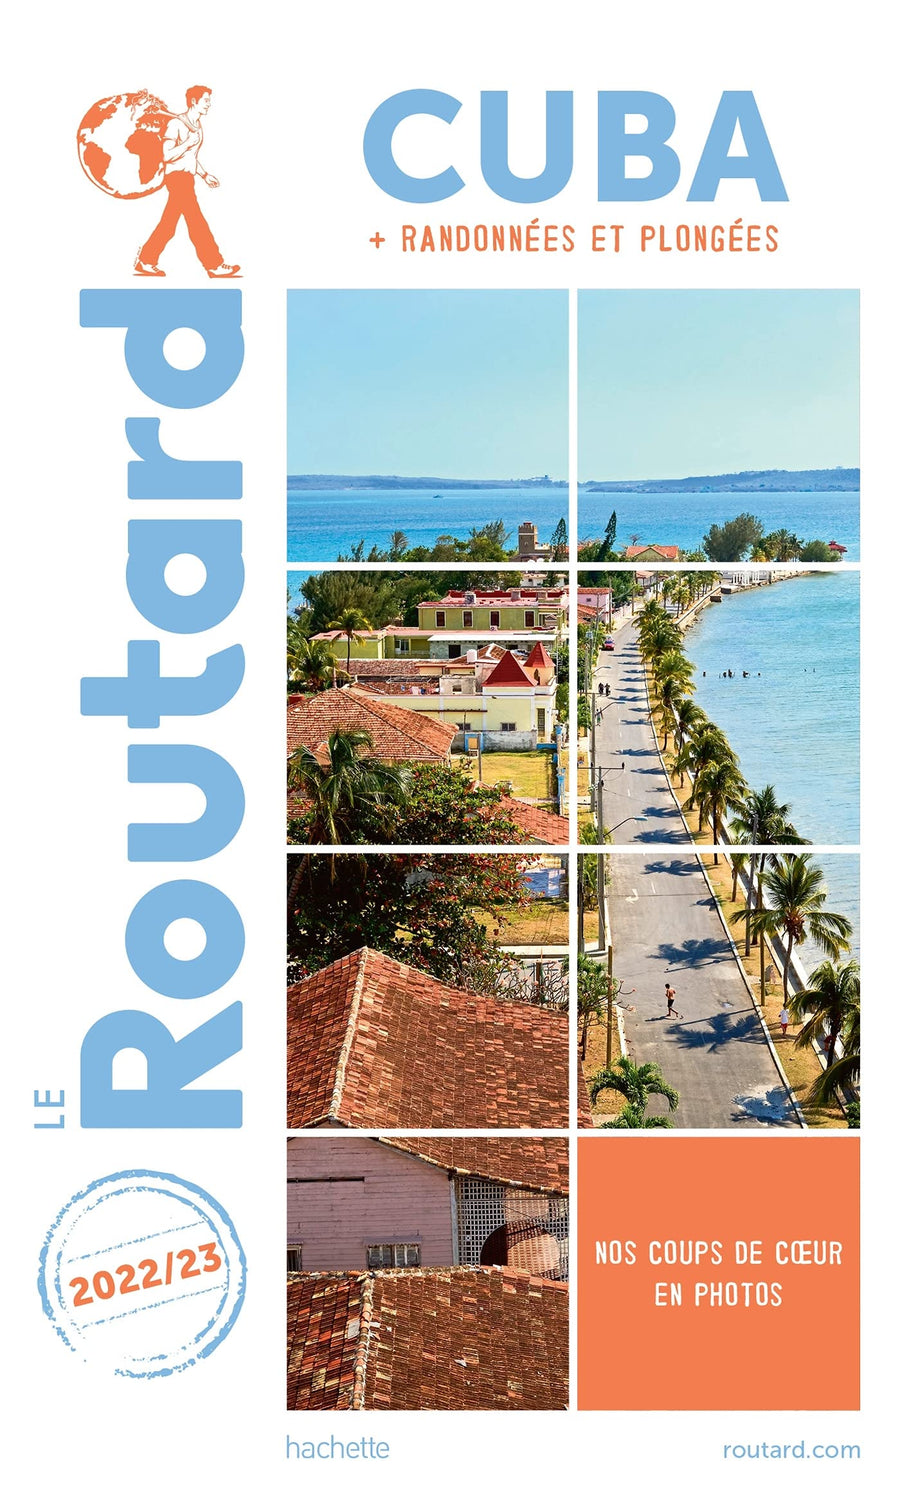 Guide du Routard - Cuba 2022/23 | Hachette guide de voyage Hachette 